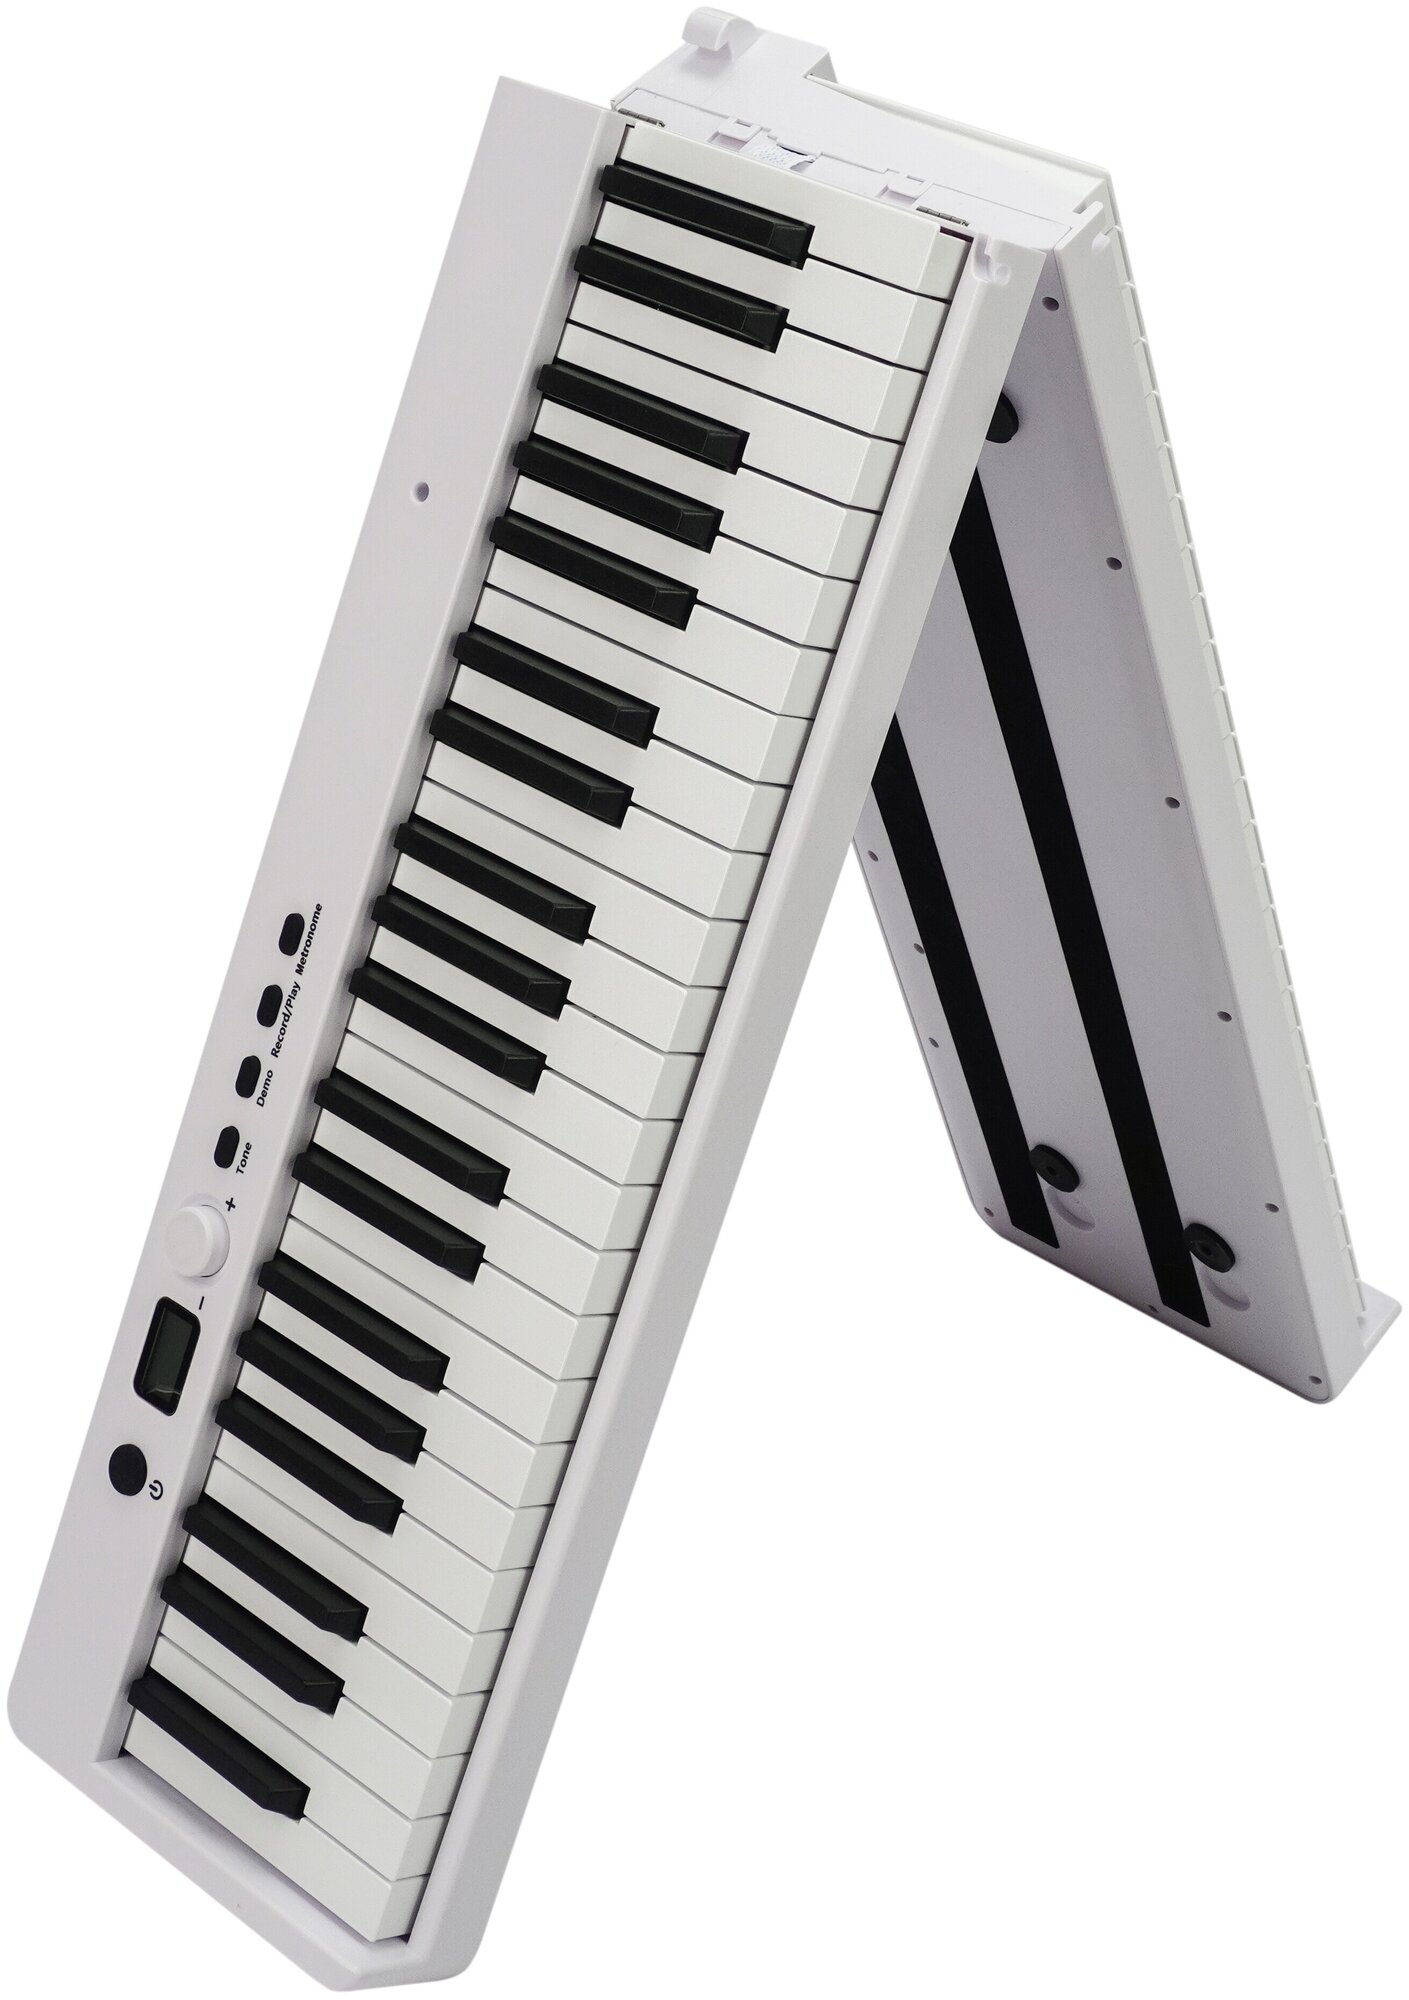 Портативное складное пианино с динамической клавиатурой PianoSolo Pro 3 White